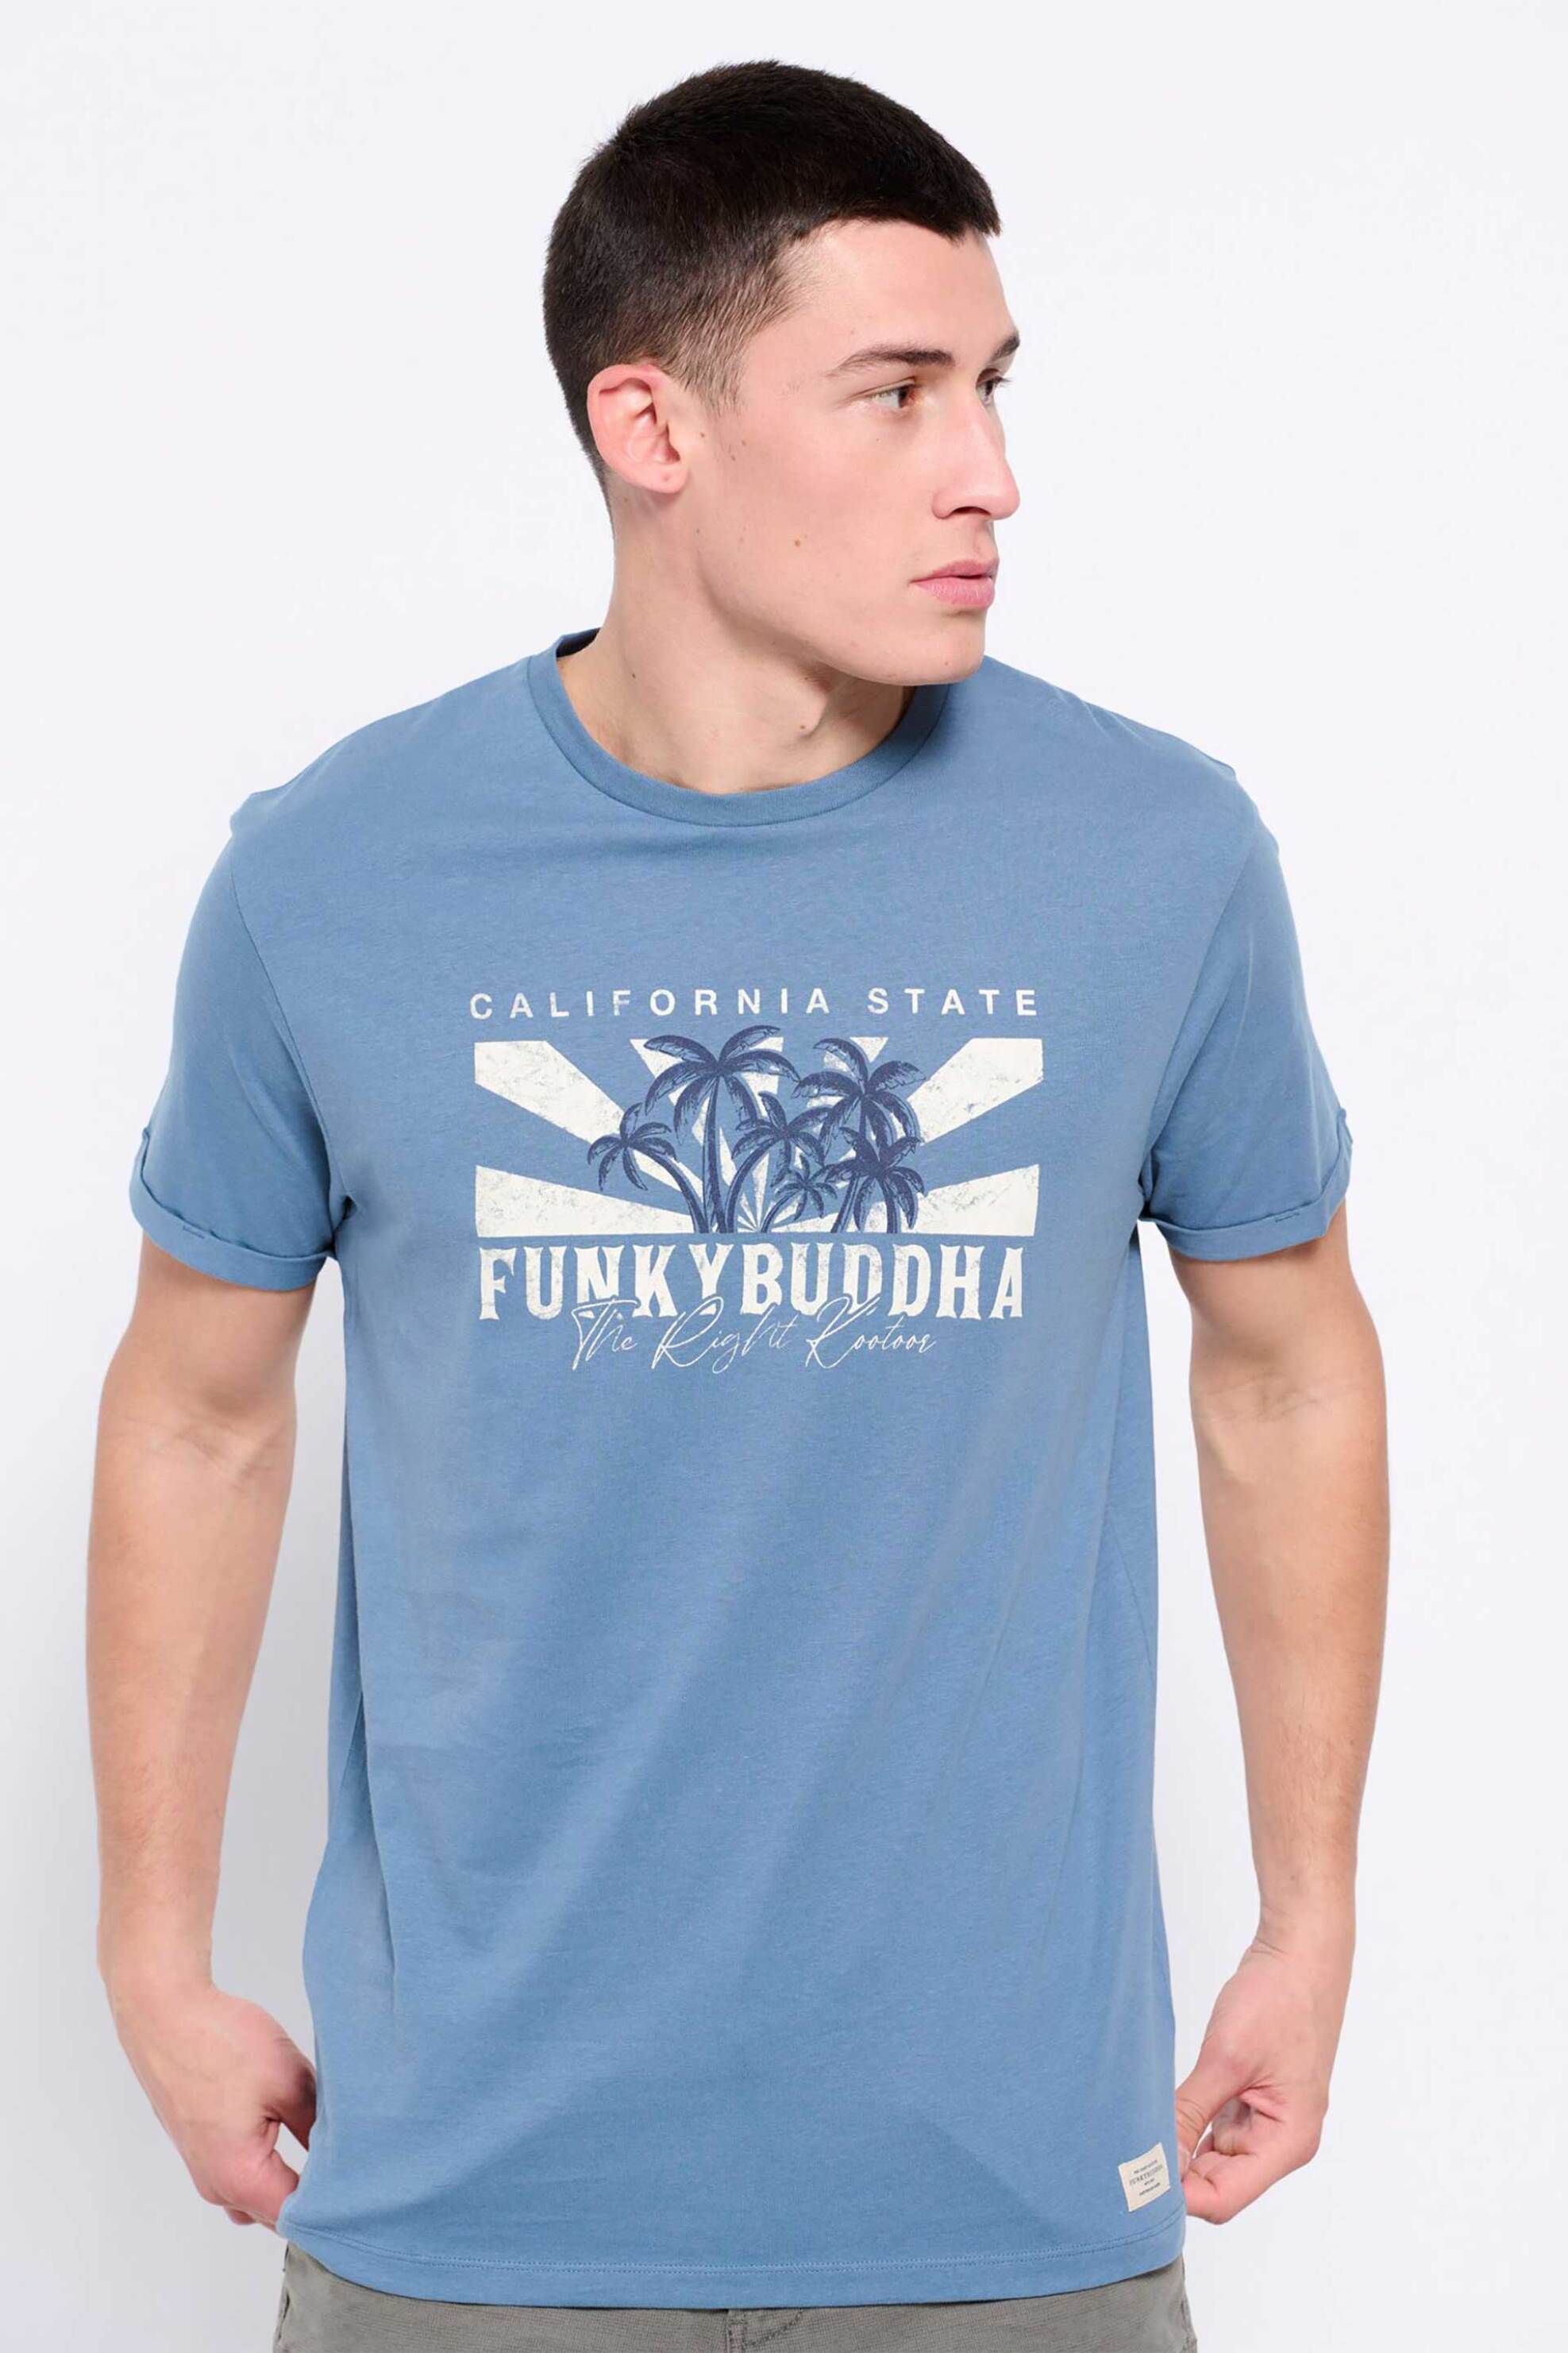 Ανδρική Μόδα > Ανδρικά Ρούχα > Ανδρικές Μπλούζες > Ανδρικά T-Shirts Funky Buddha ανδρικό βαμβακερό T-shirt μονόχρωμο με vintage-look logo print μπροστά - FBM007-040-04 Γκρι Γαλάζιο